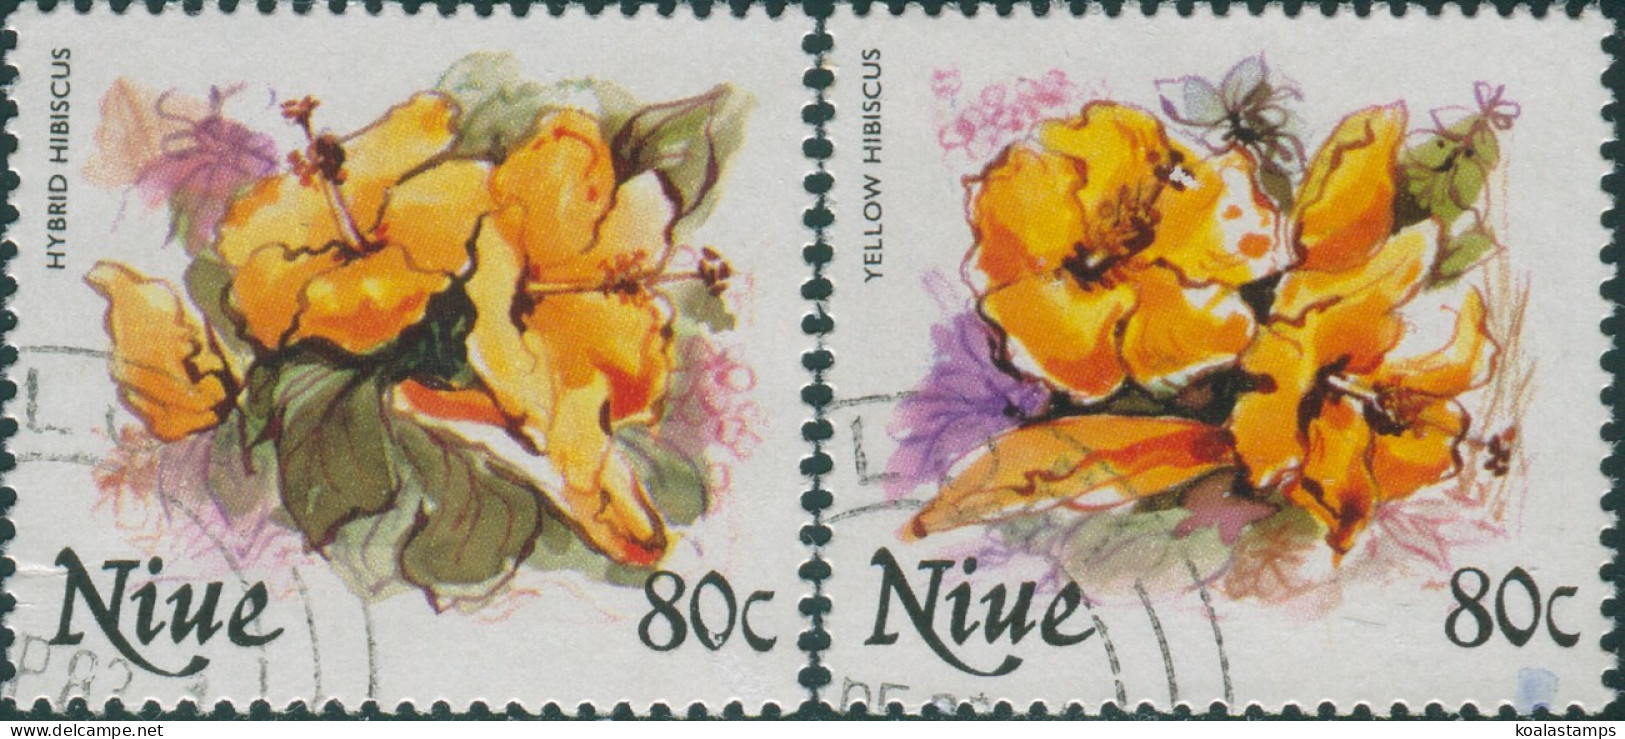 Niue 1981 SG403-404 80c Flowers FU - Niue